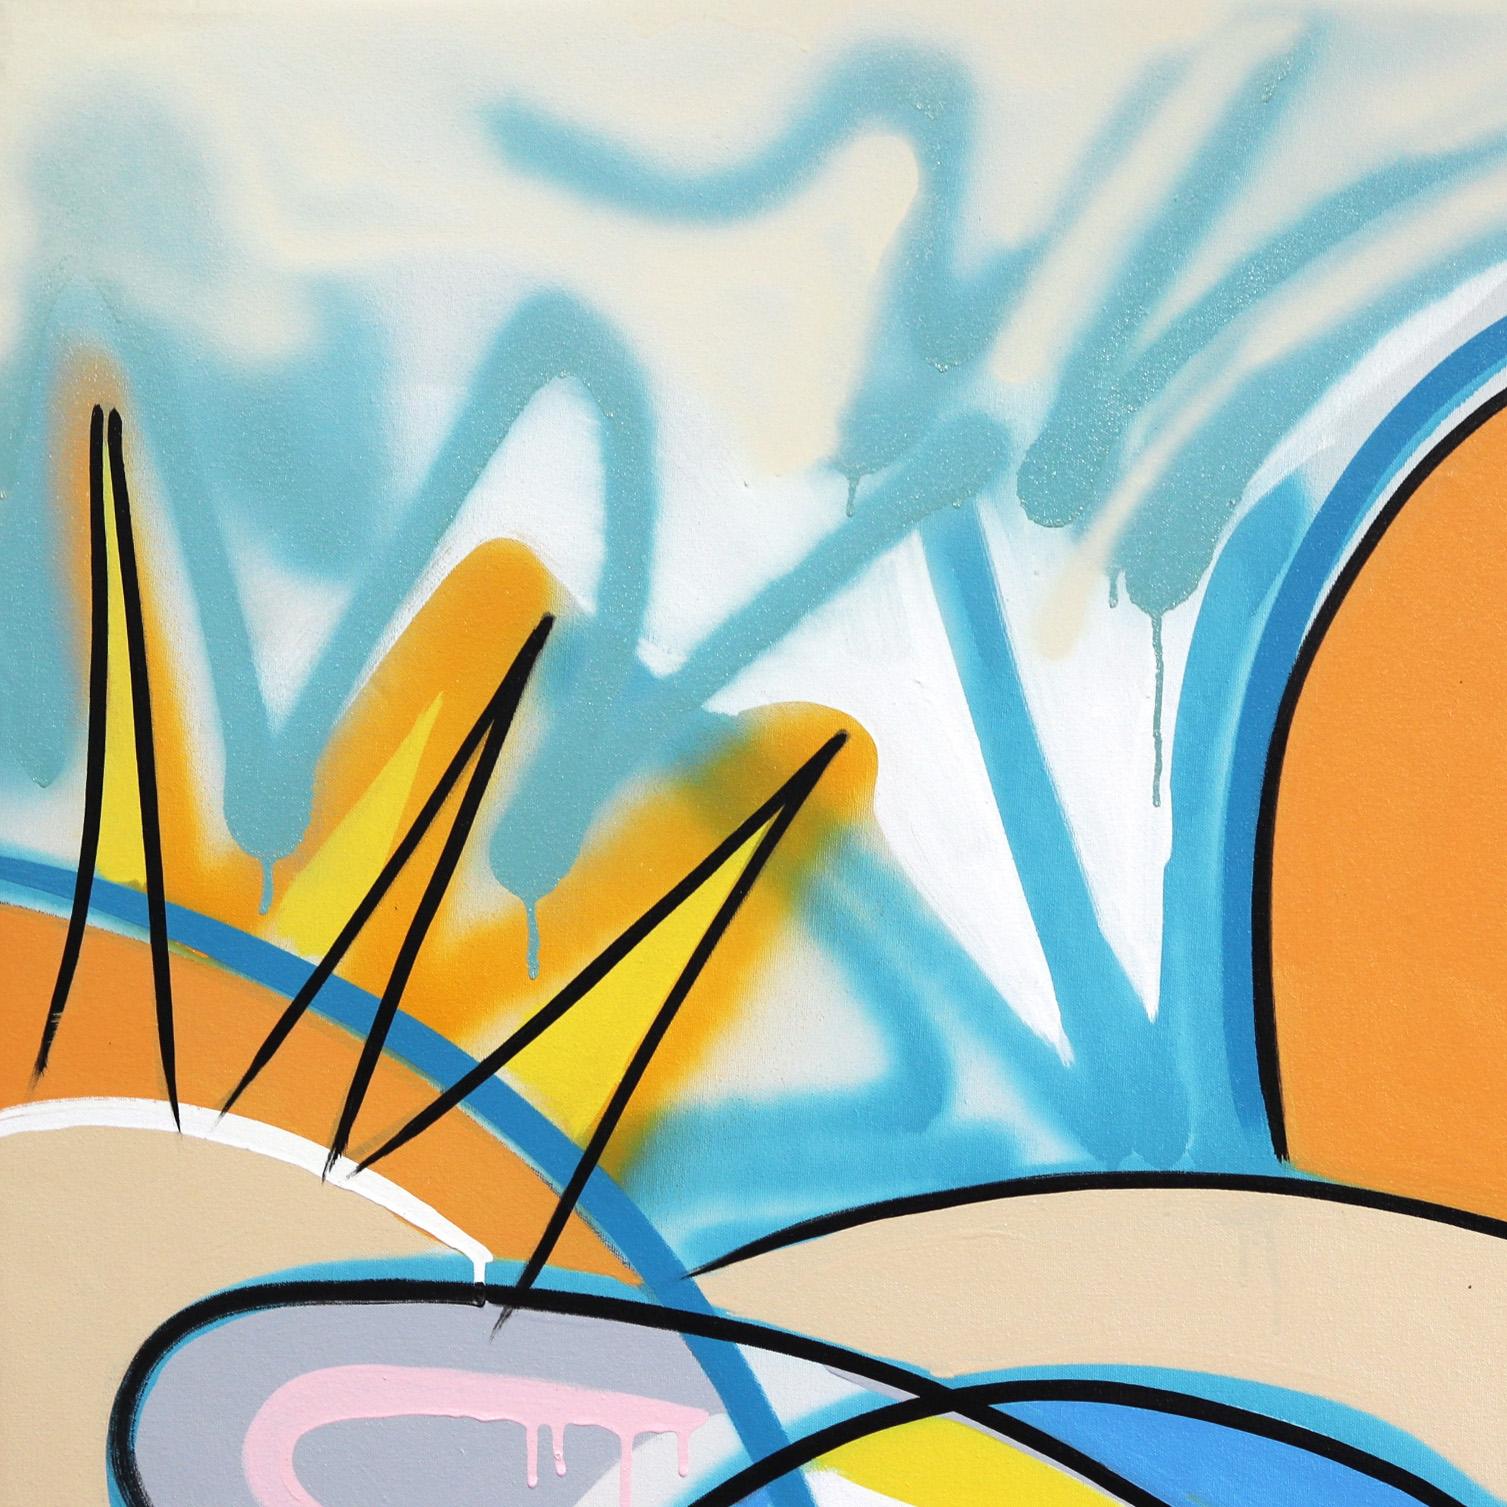 Light Force – Original, großes, übergroßes, kubistisches Gemälde des abstrakten Expressionismus (Abstrakter Expressionismus), Painting, von Frankie Alfonso